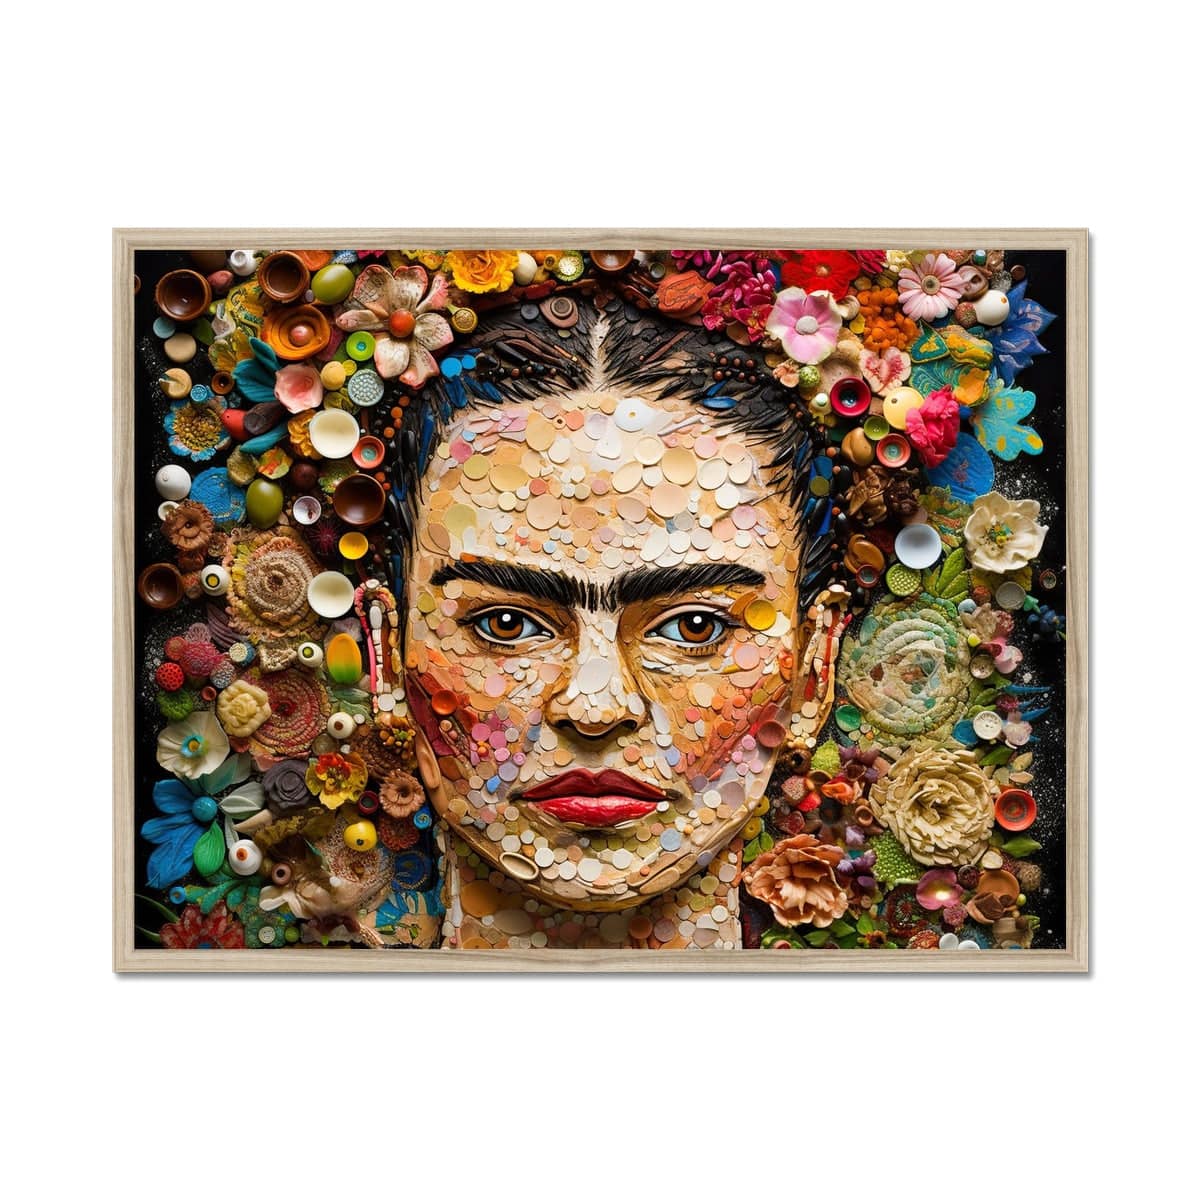 Frida Kahlo Portrait Framed Print - Pixel Gallery